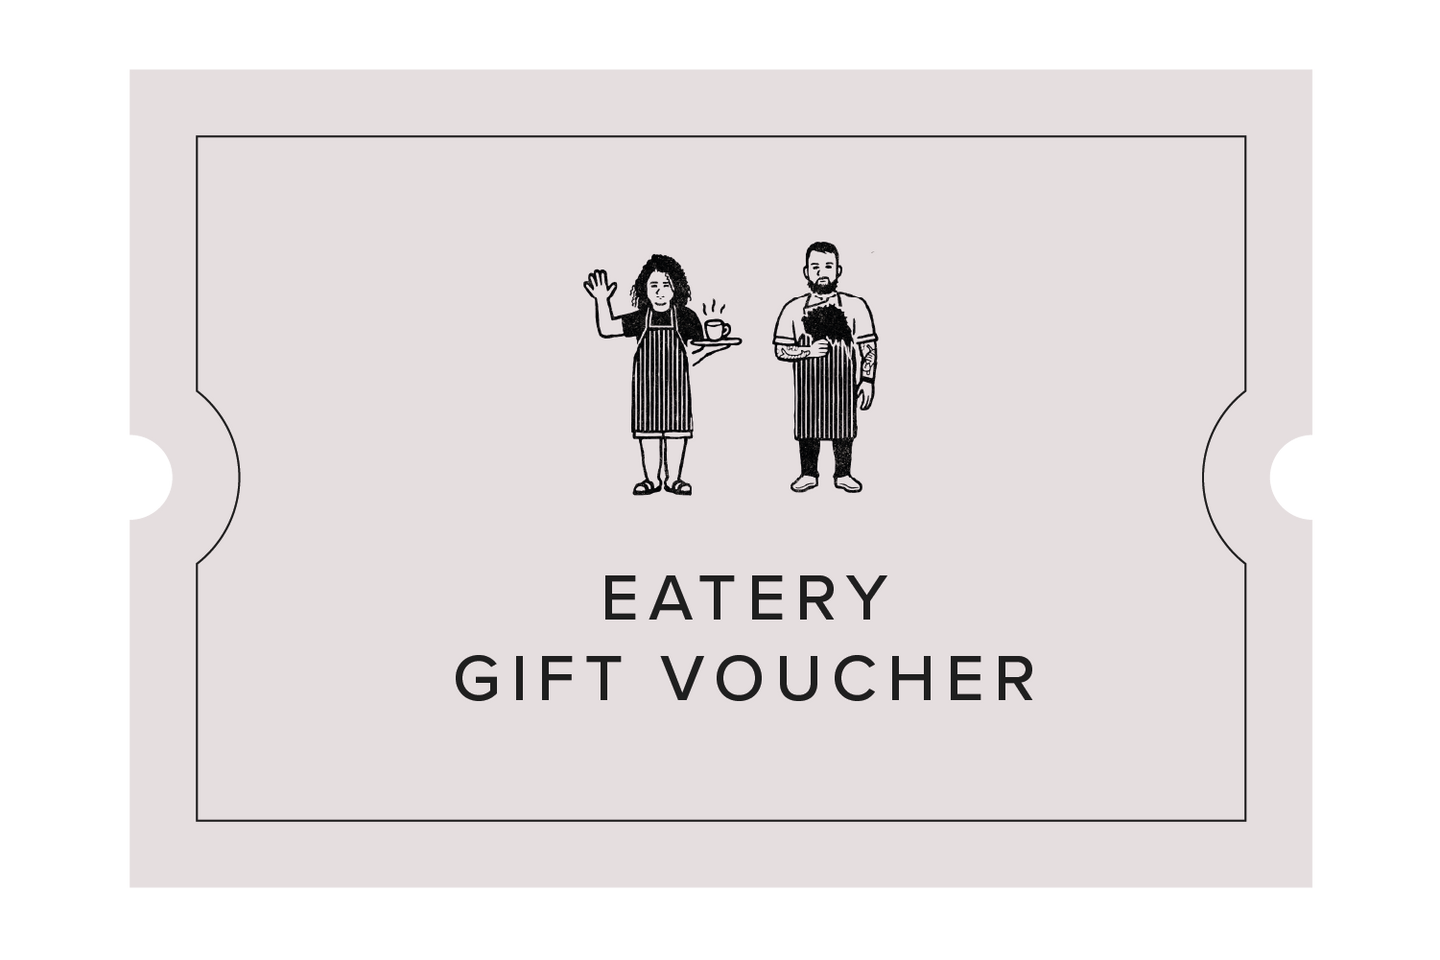 Eatery Gift Voucher